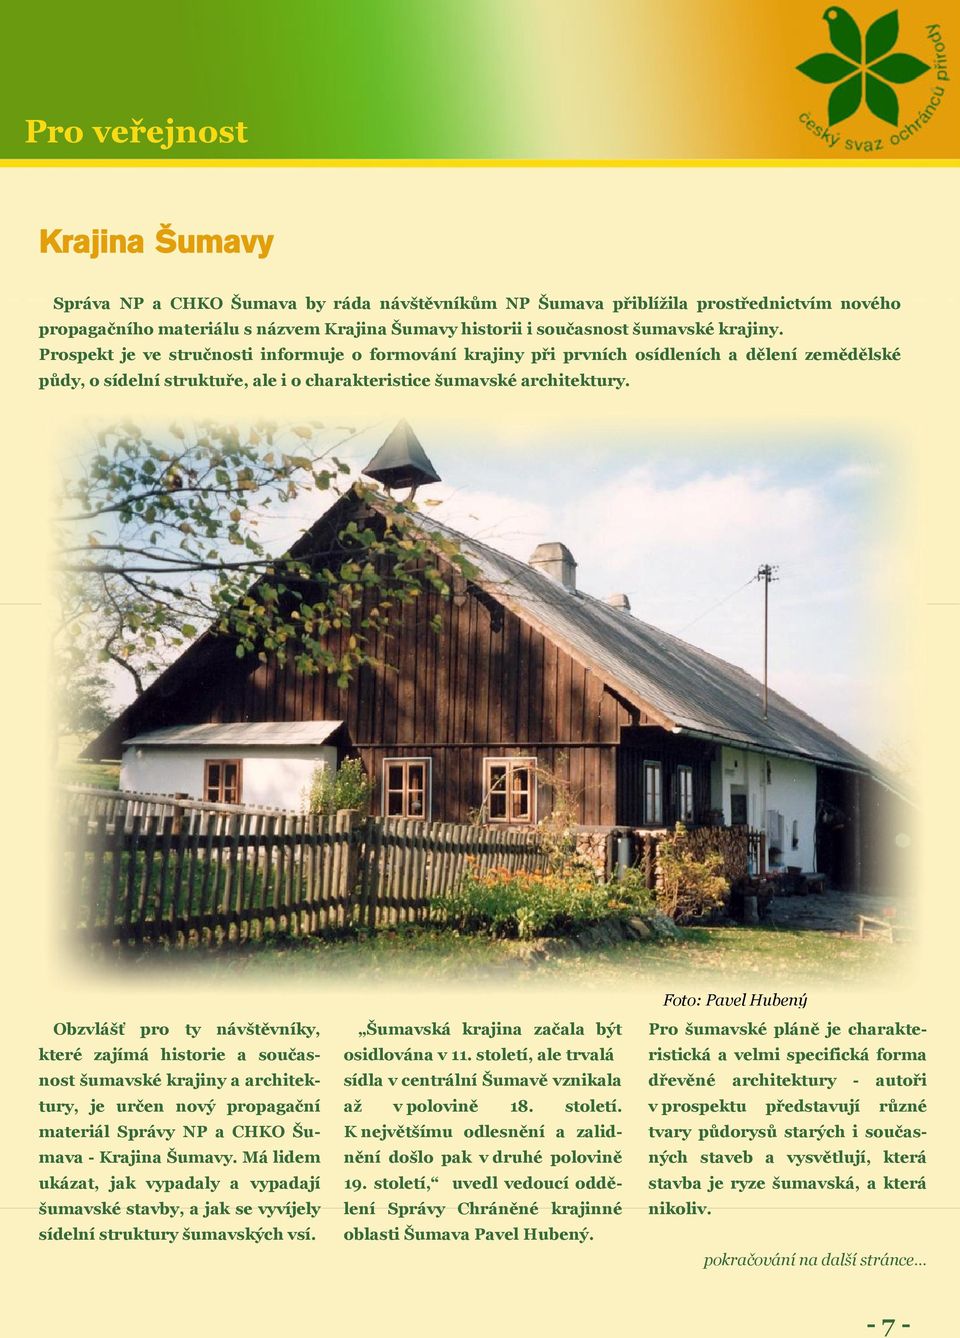 Obzvlášť pro ty návštěvníky, které zajímá historie a současnost šumavské krajiny a architektury, je určen nový propagační materiál Správy NP a CHKO Šumava - Krajina Šumavy.